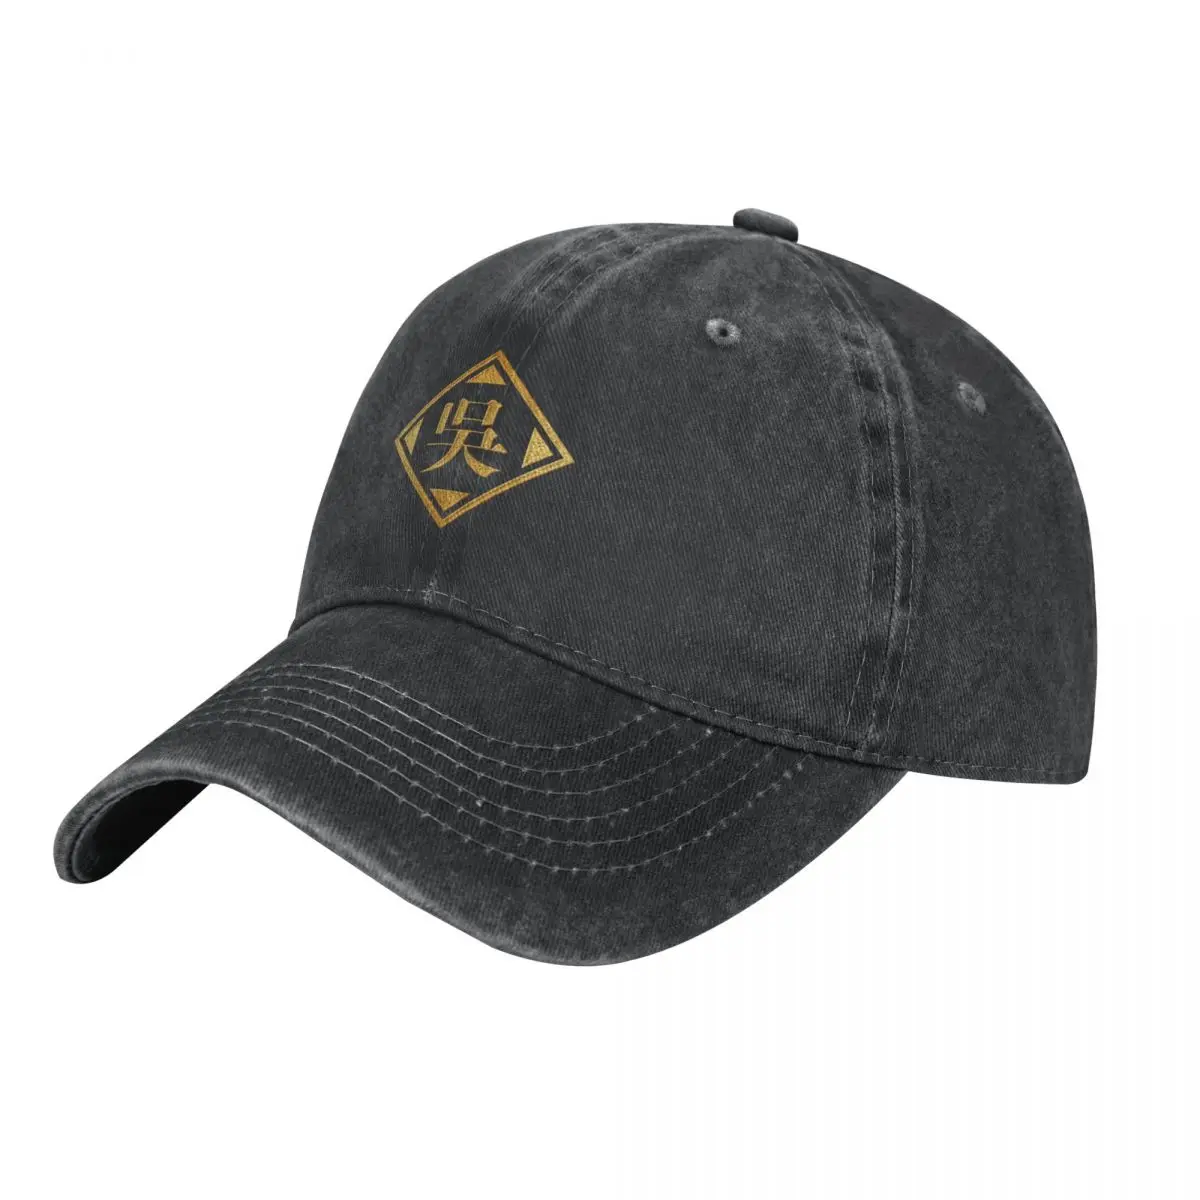 

Wu ковбойская шляпа с именем семьи в золотом цвете, шапка для походов, шапка с дикими мячиками, западная одежда для гольфа для мужчин и женщин